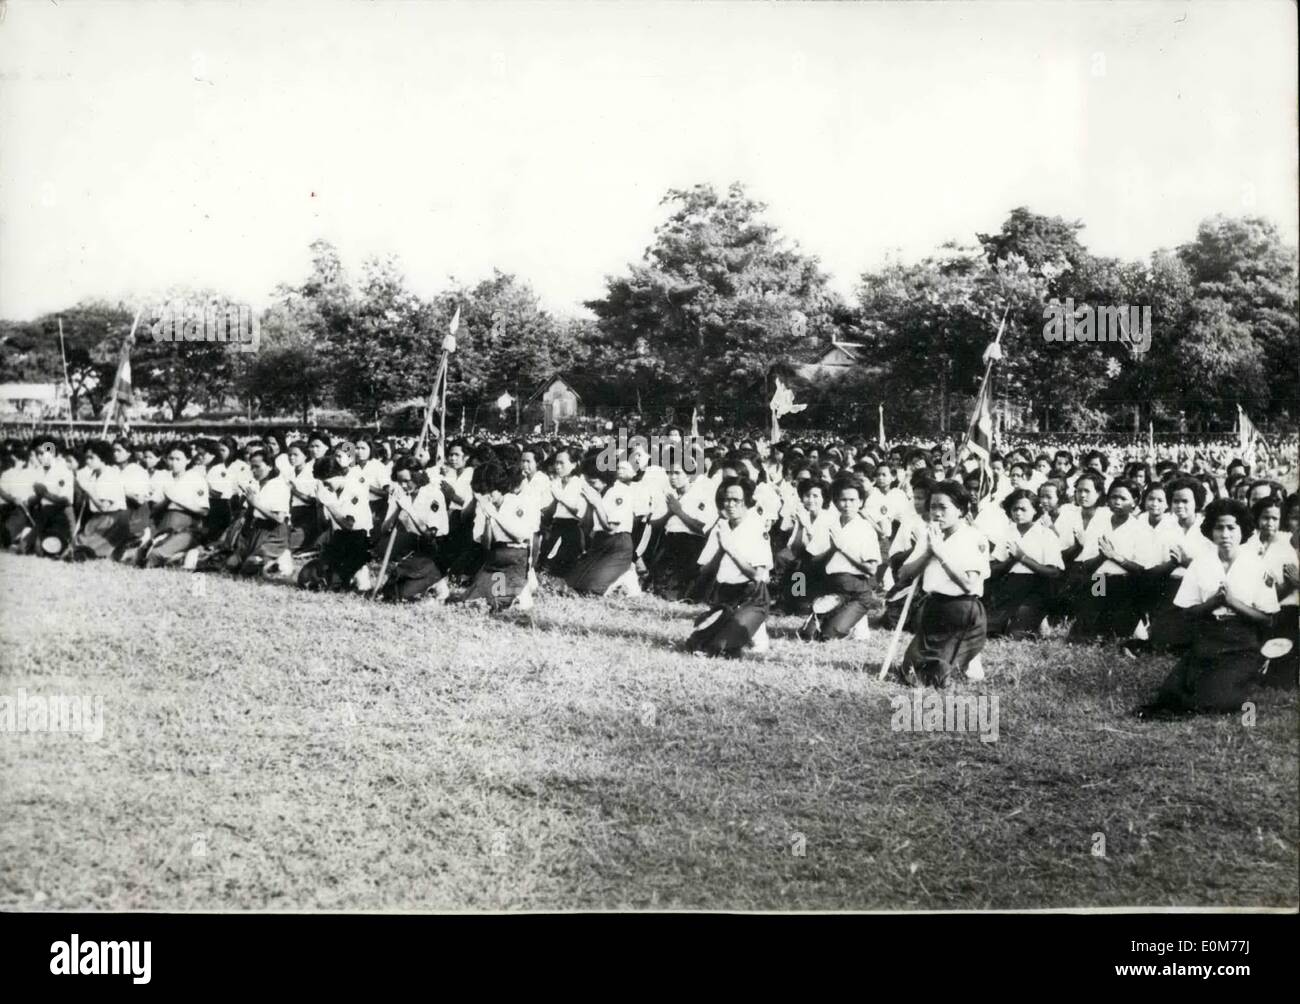 Nov. 11, 1953 - Giuramento di fedeltà al Re di Cambogia: ragazze cambogiane pegno fedeltà a re Norodom Sihanouk in occasione di una cerimonia che si terrà nella provincia di Kopong Cham di recente. Foto Stock